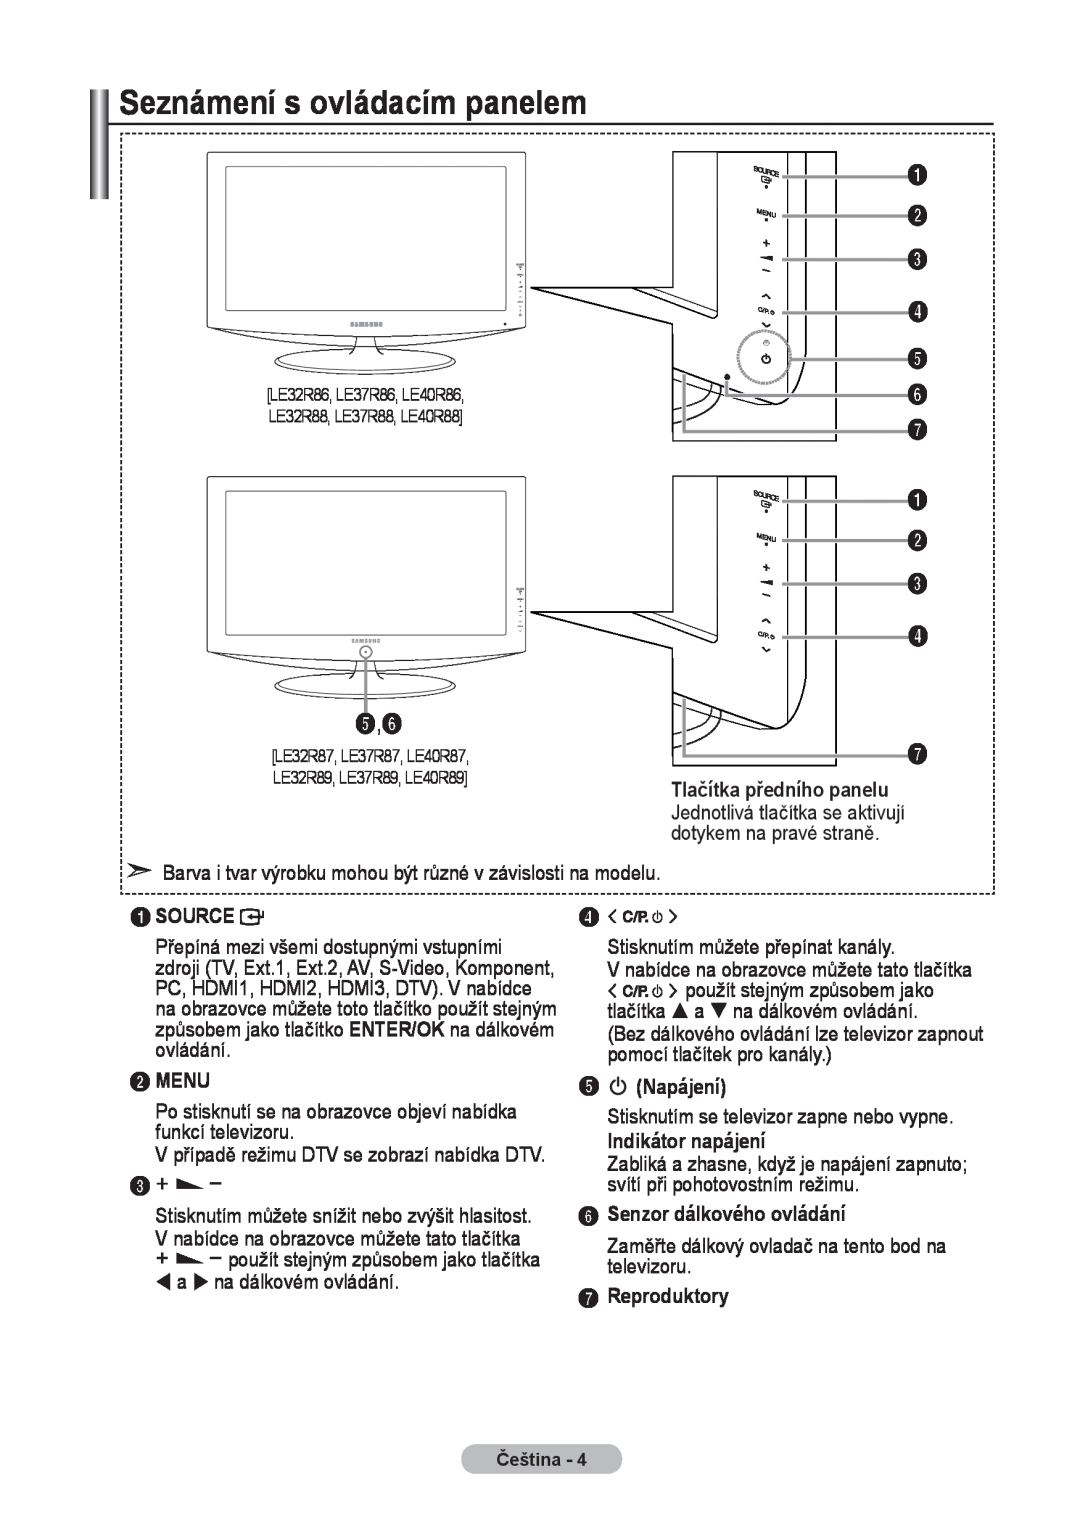 Samsung LE40R8 manual Seznámení s ovládacím panelem, Tlačítka předního panelu, Source, Menu, 5 Napájení, Indikátor napájení 